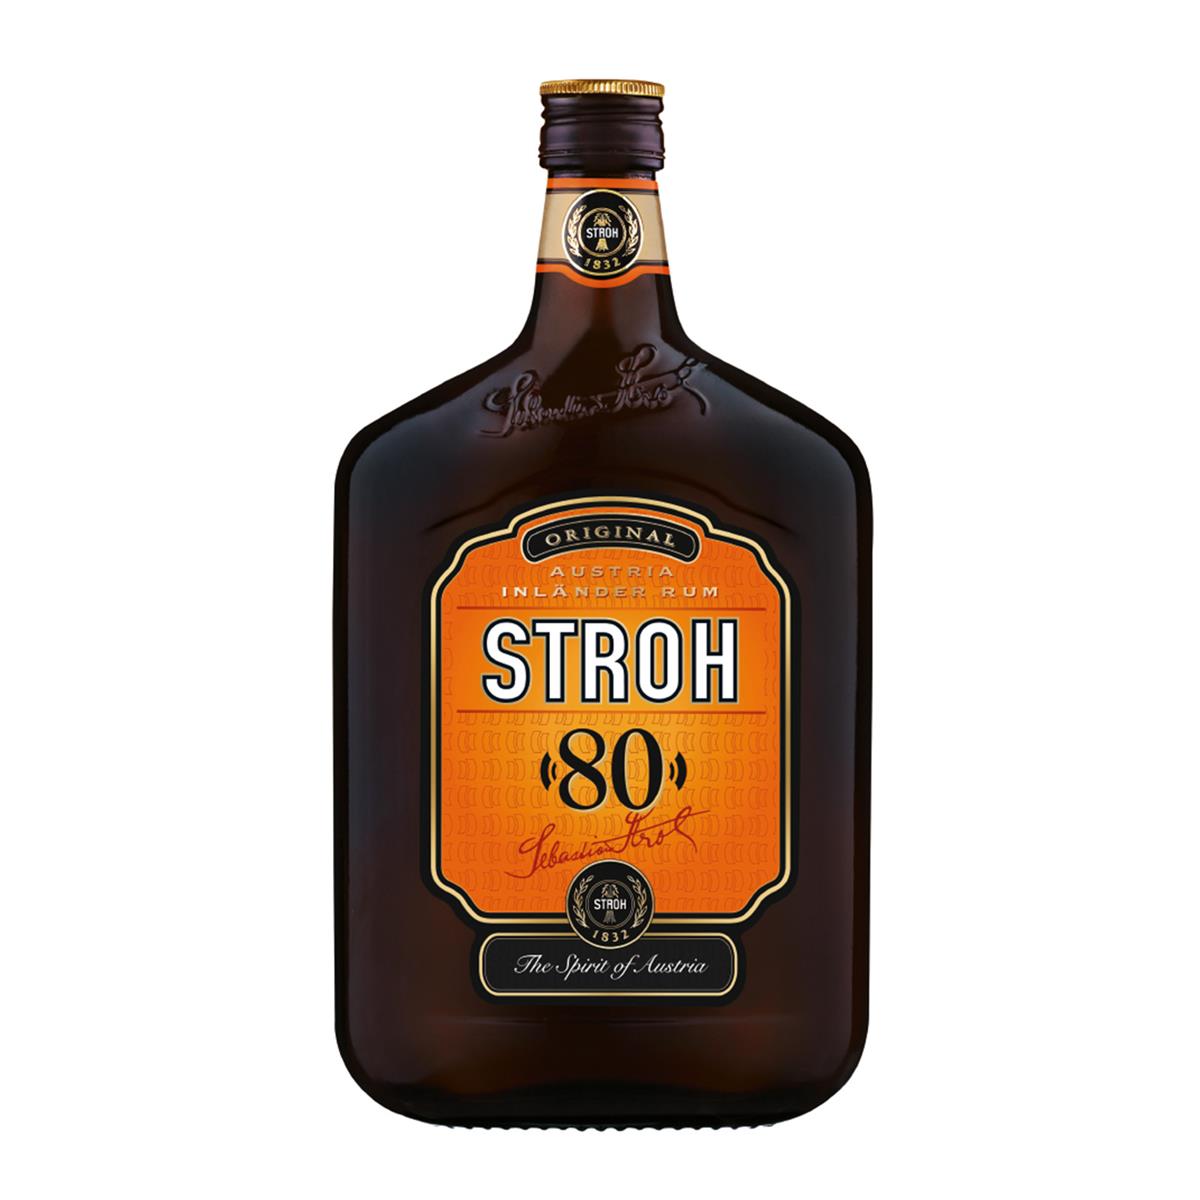 Handvest Vergissing bedenken Stroh Rum online bestellen | BILLA